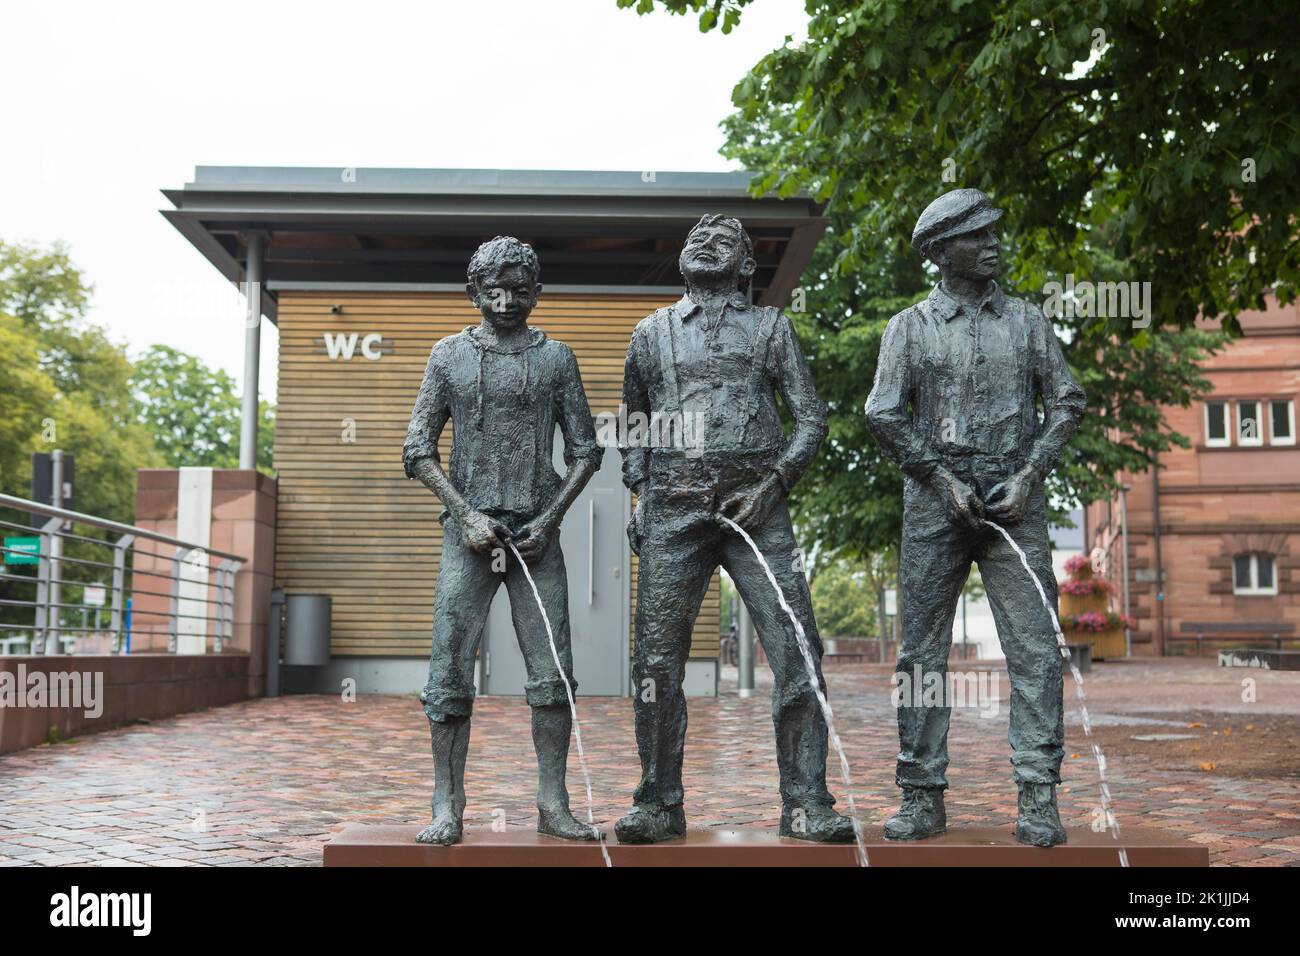 La scultura dei ragazzi di peeing 'Staffelbrunserbrunnen' nella città interna di Miltenberg, Germania Foto Stock